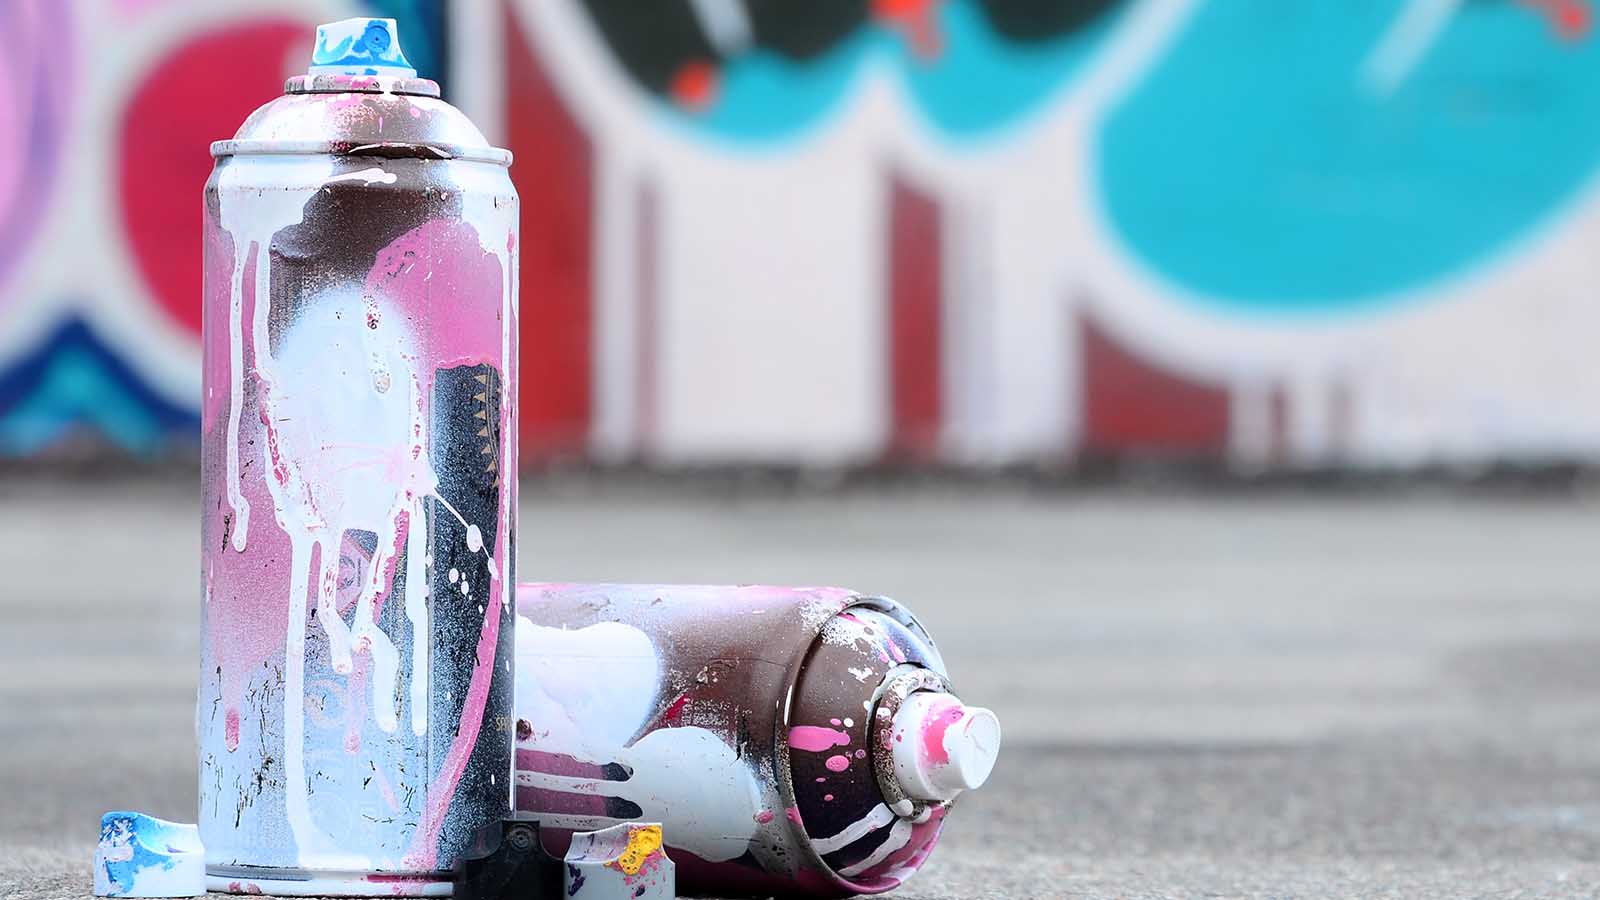 Why is Spray Paint Addictive?